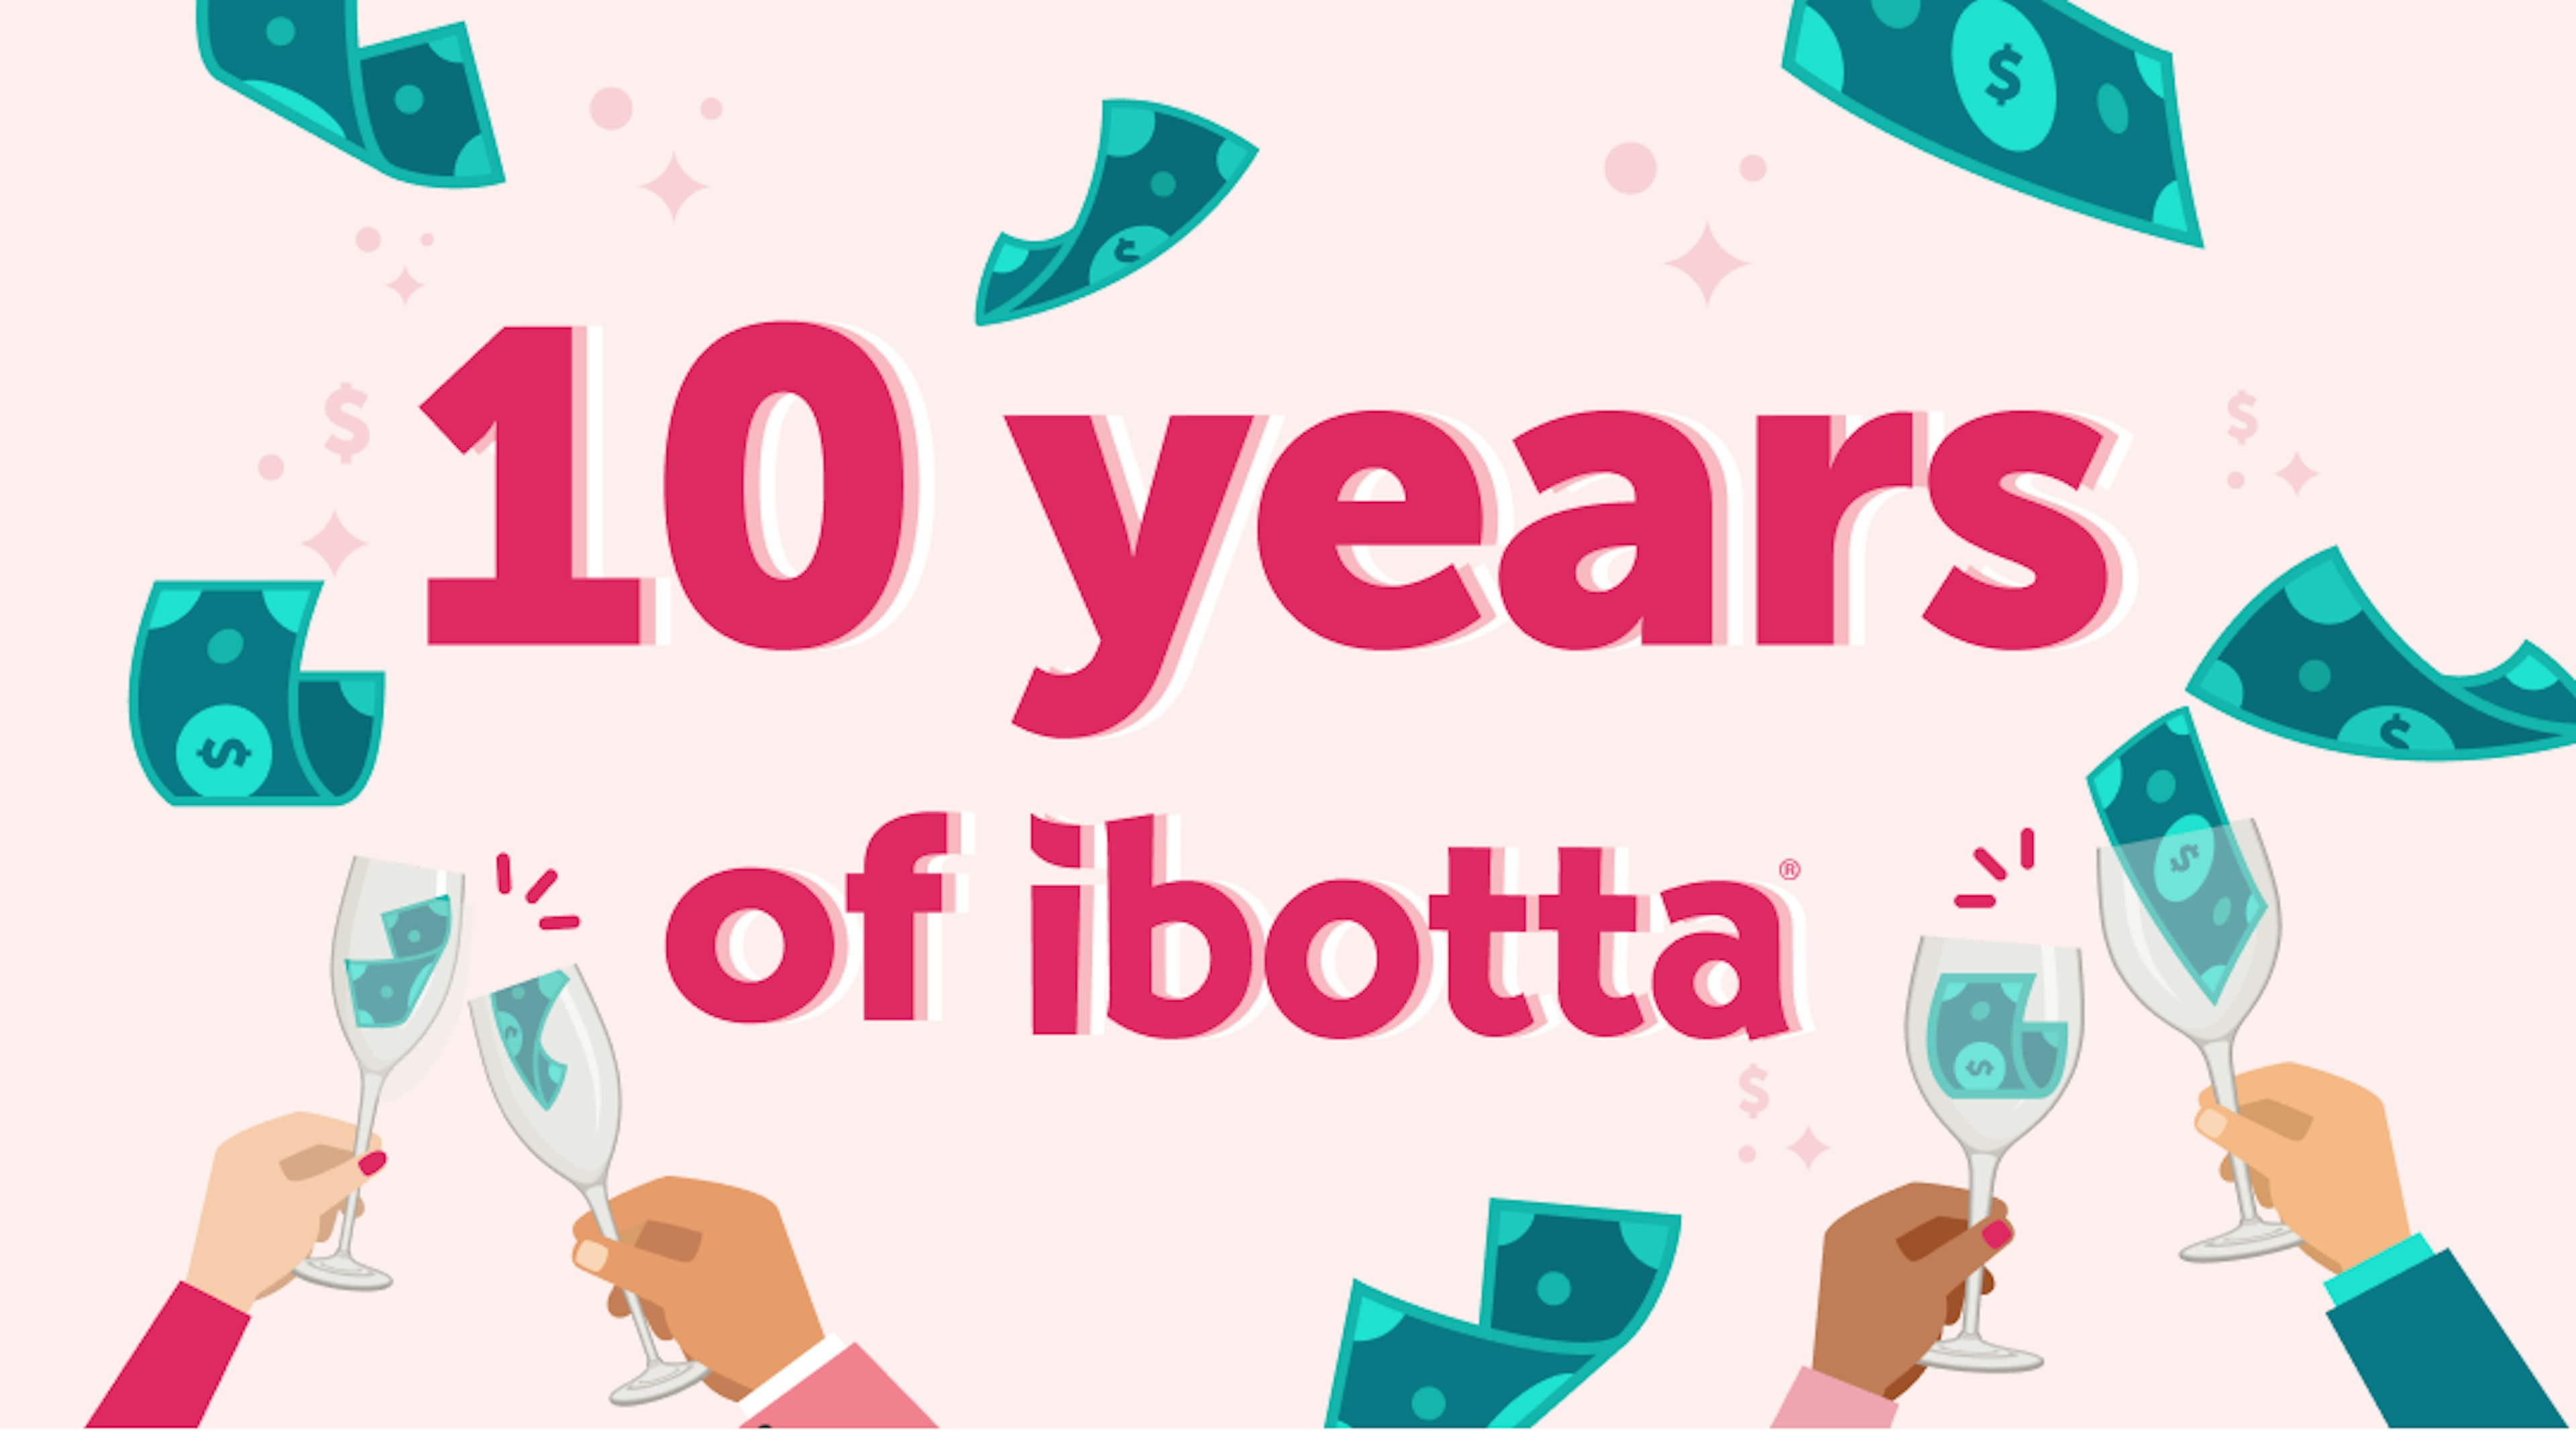 10 years of Ibotta